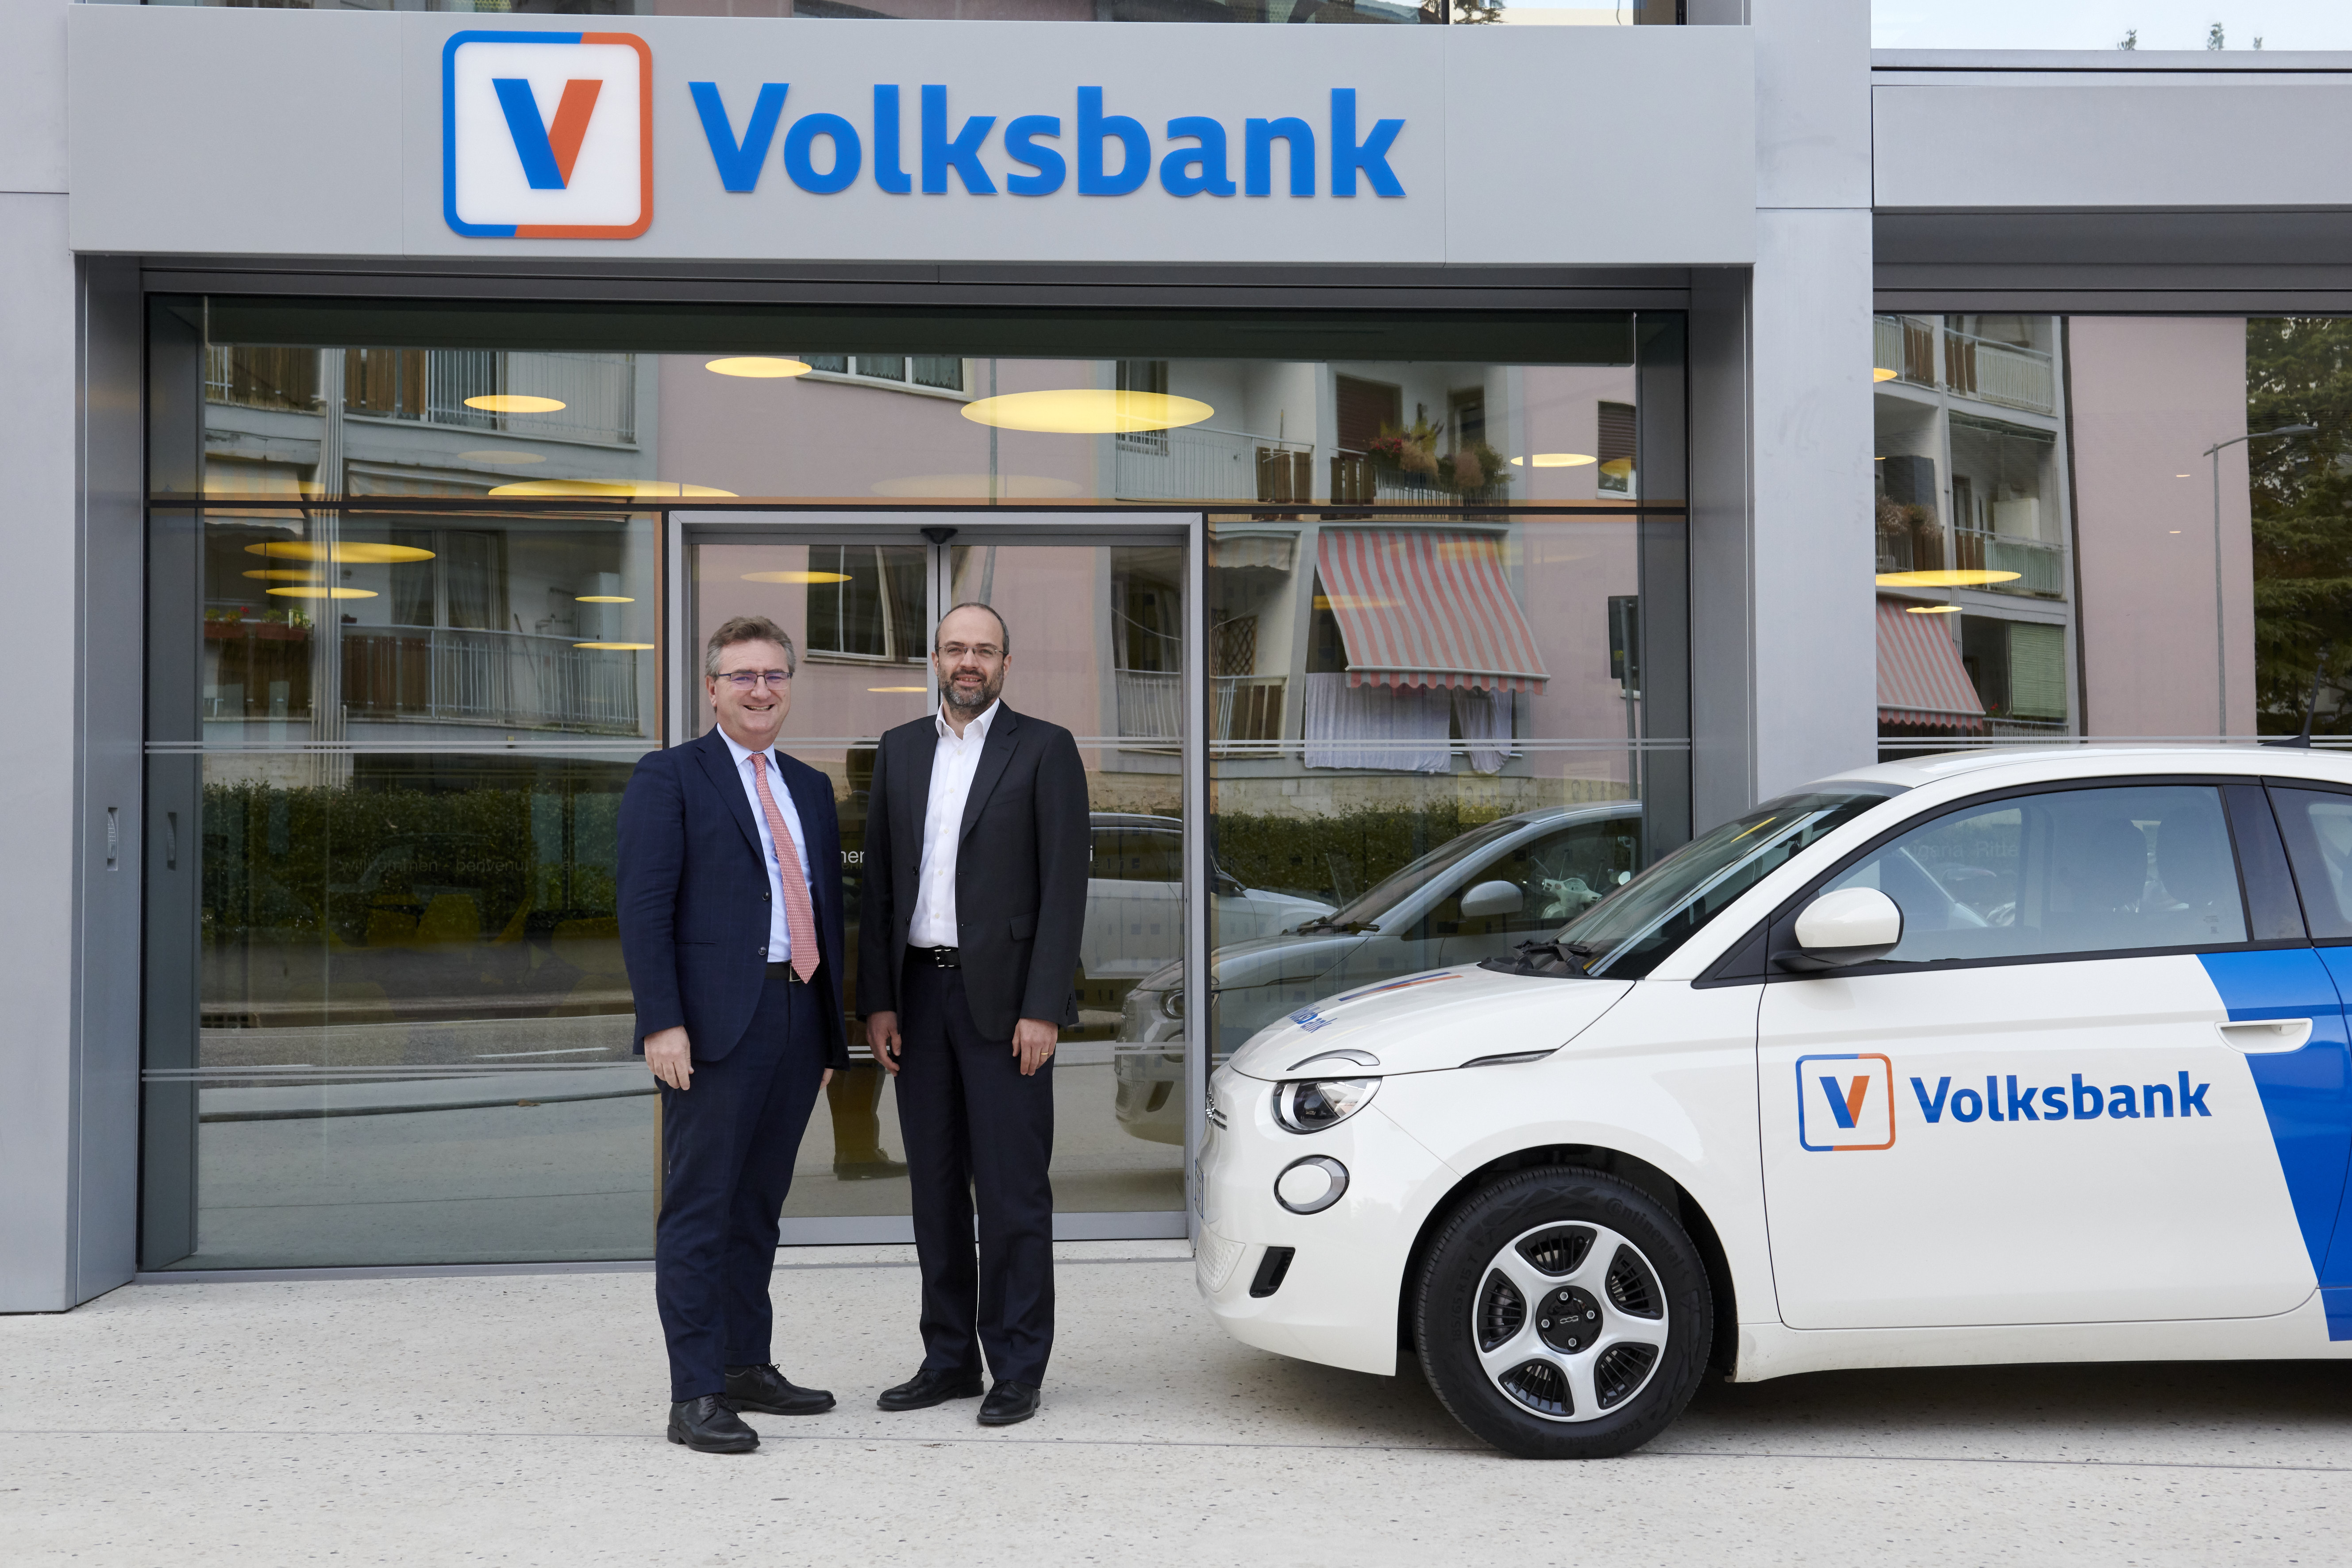 Volksbank presenta il marchio con un nuovo design